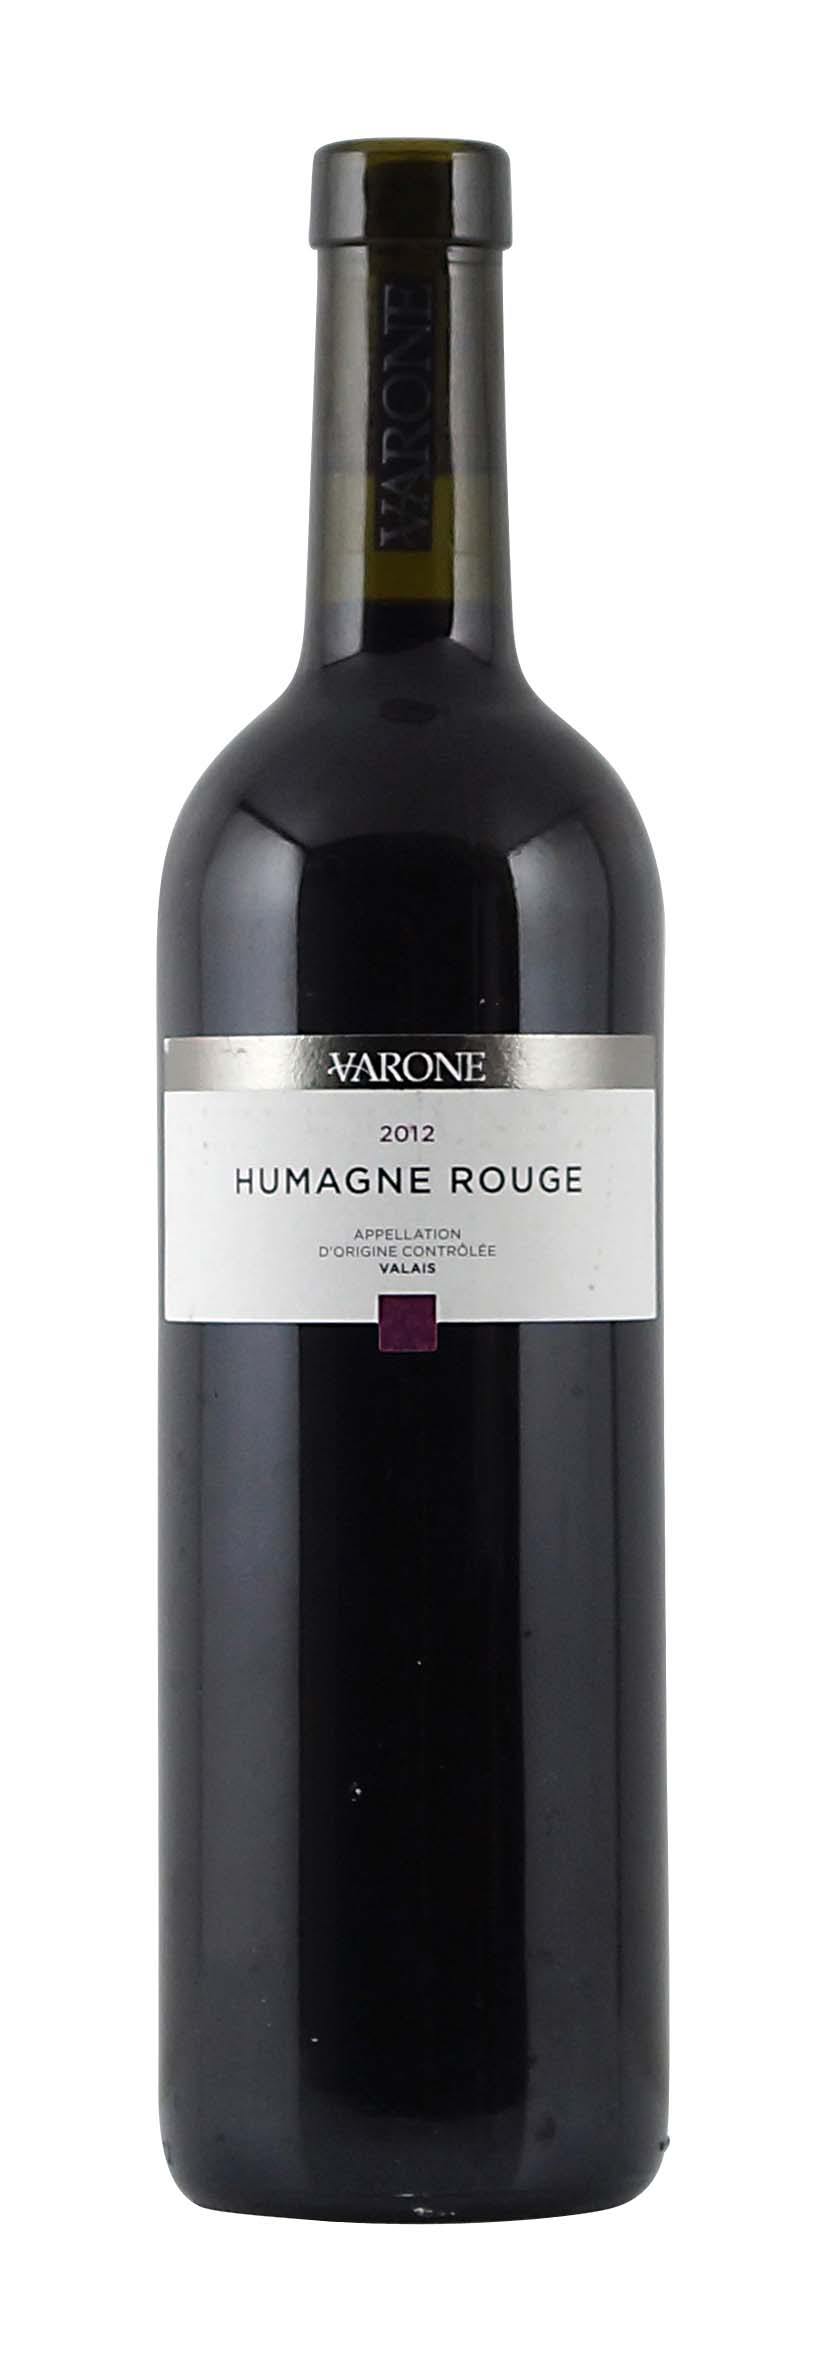 Valais AOC Humagne Rouge 2012